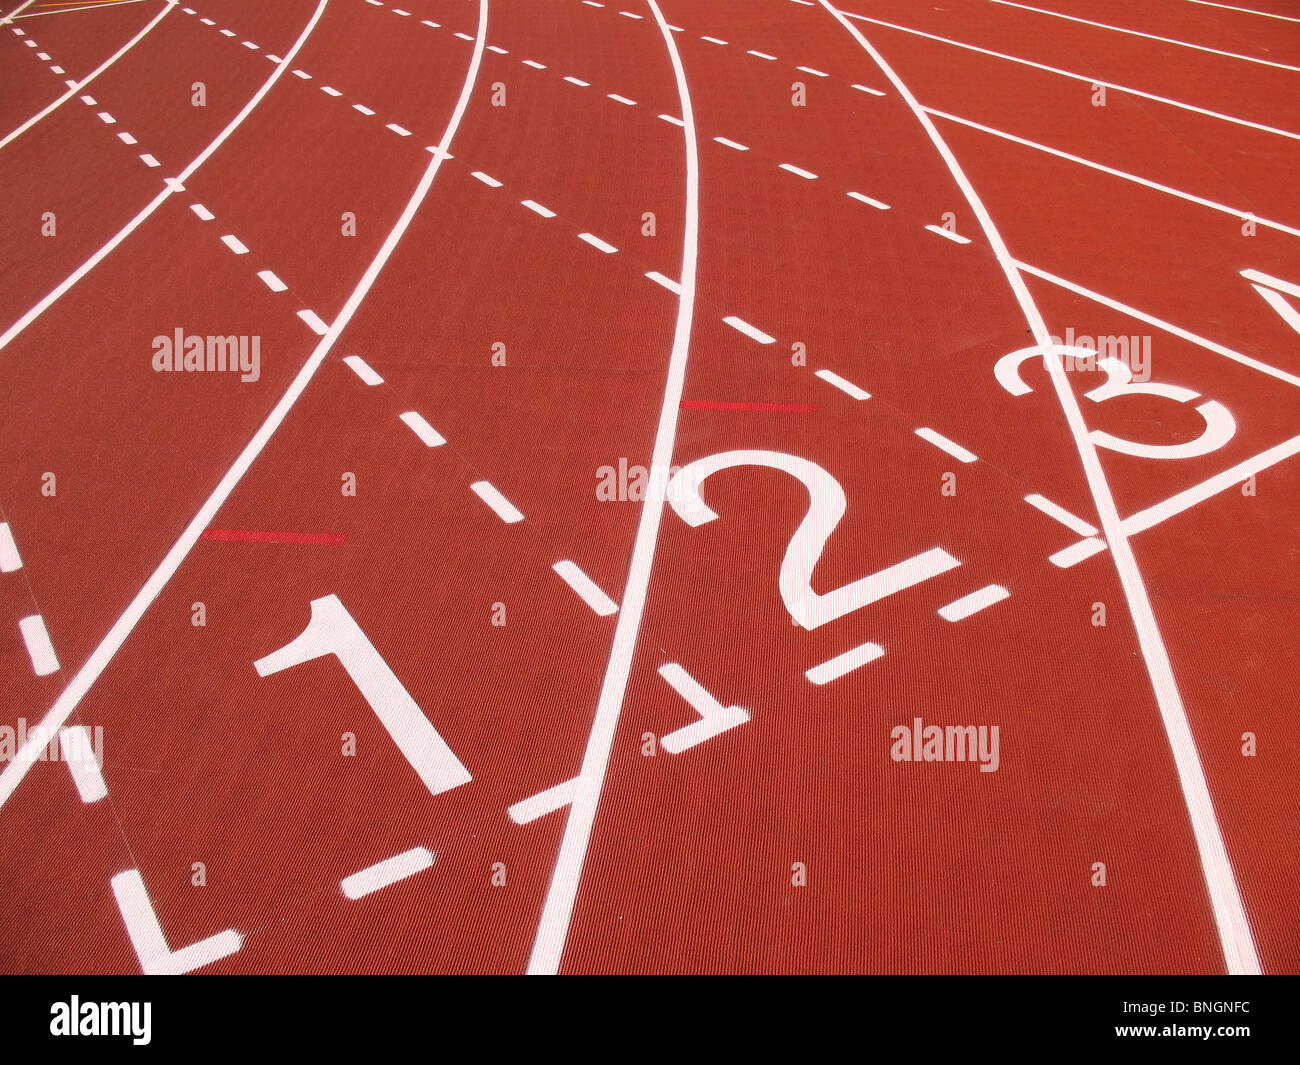 Le posizioni di partenza su una corsa atletica via Foto Stock